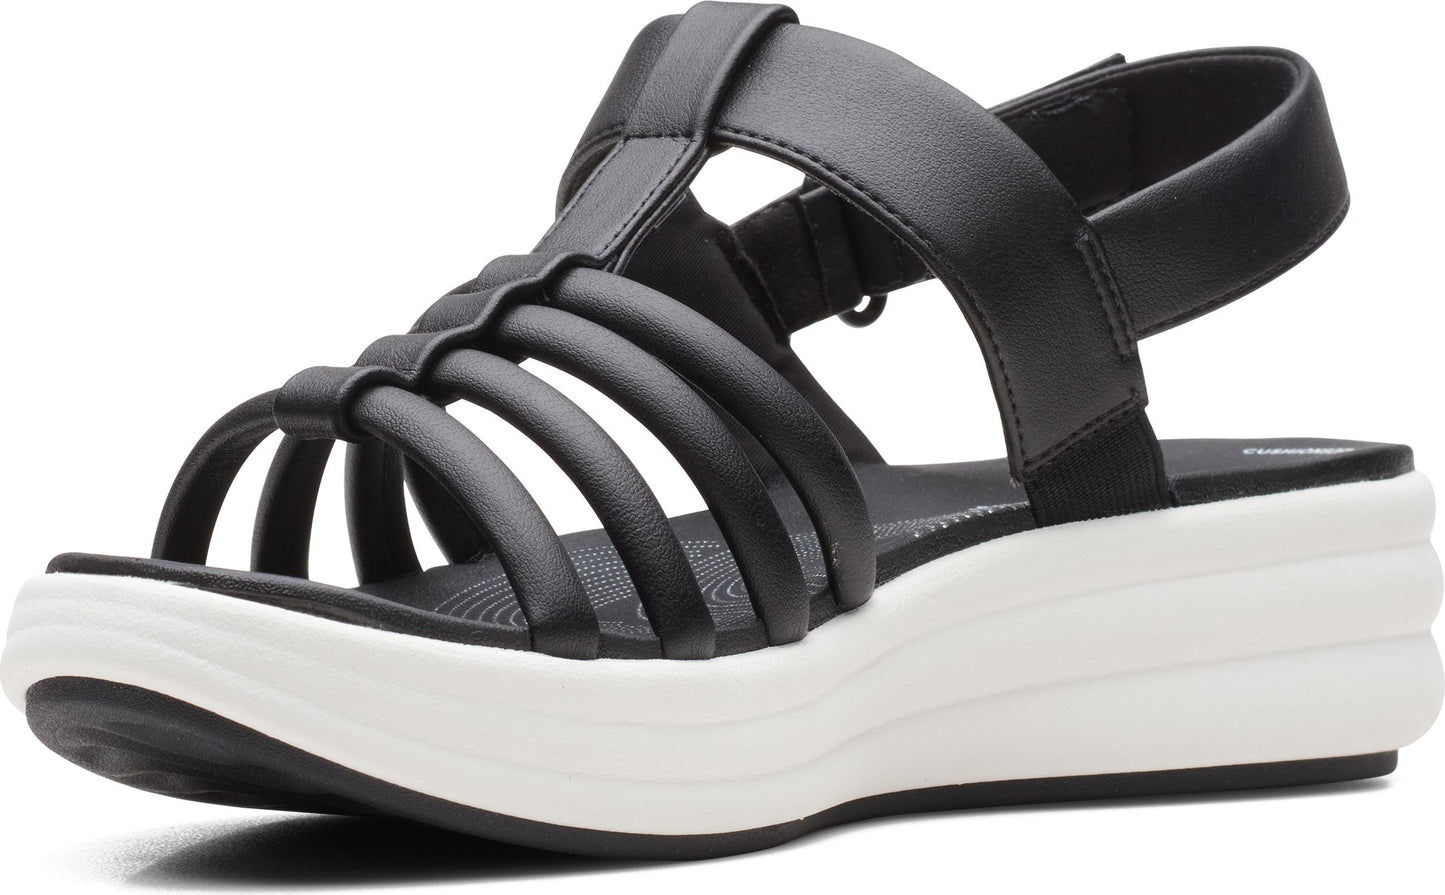 Clarks Sandals Drift Ease Black